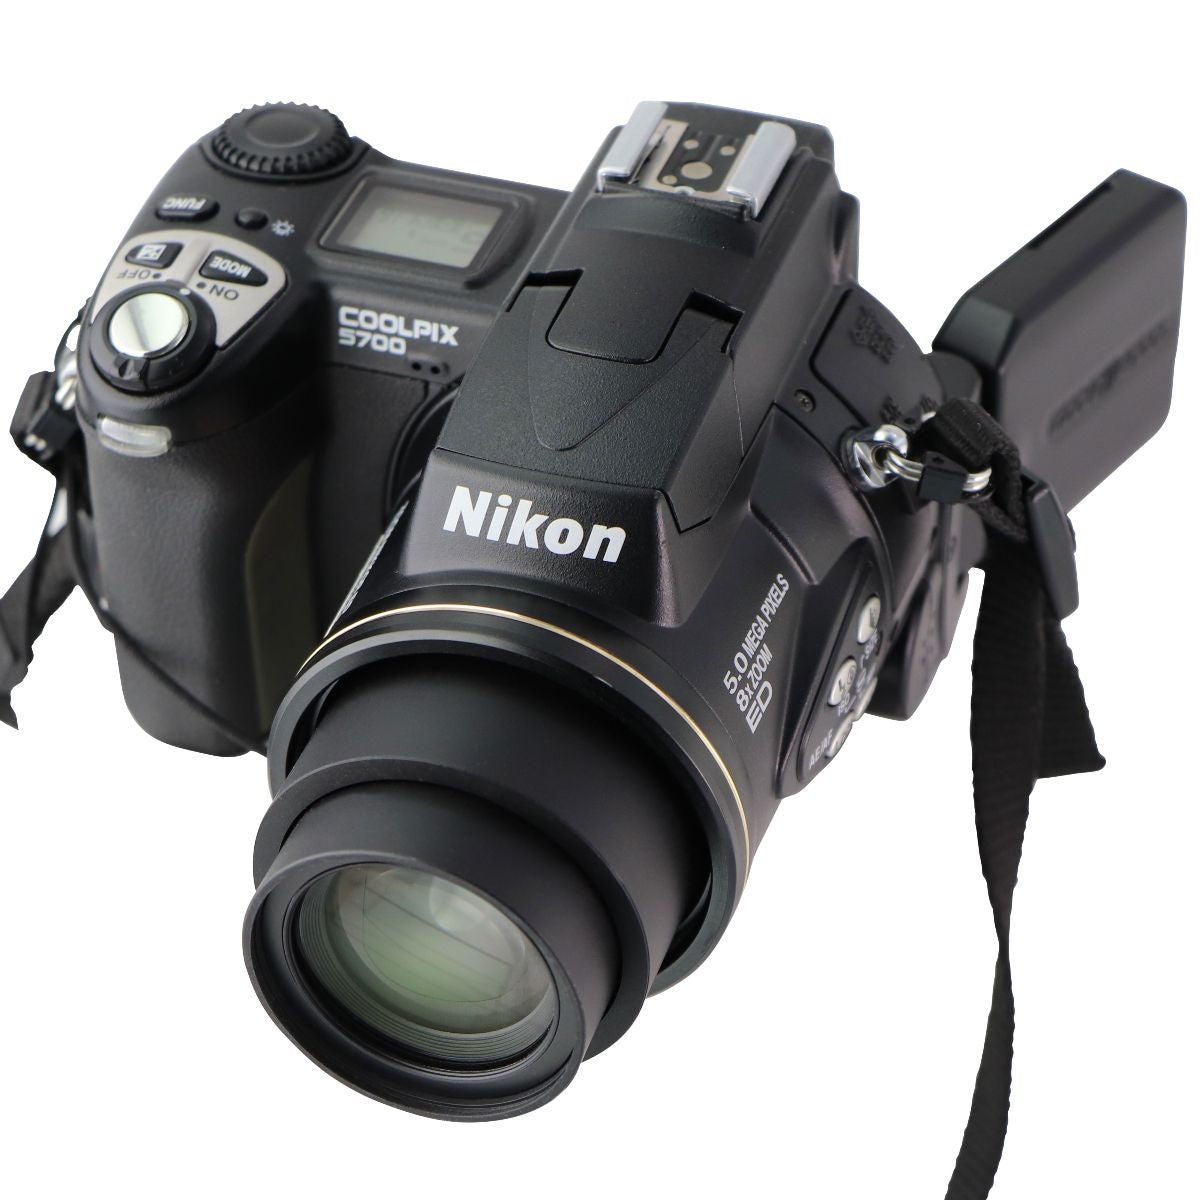 Coolpix 5700 (E5700) - デジタルカメラ